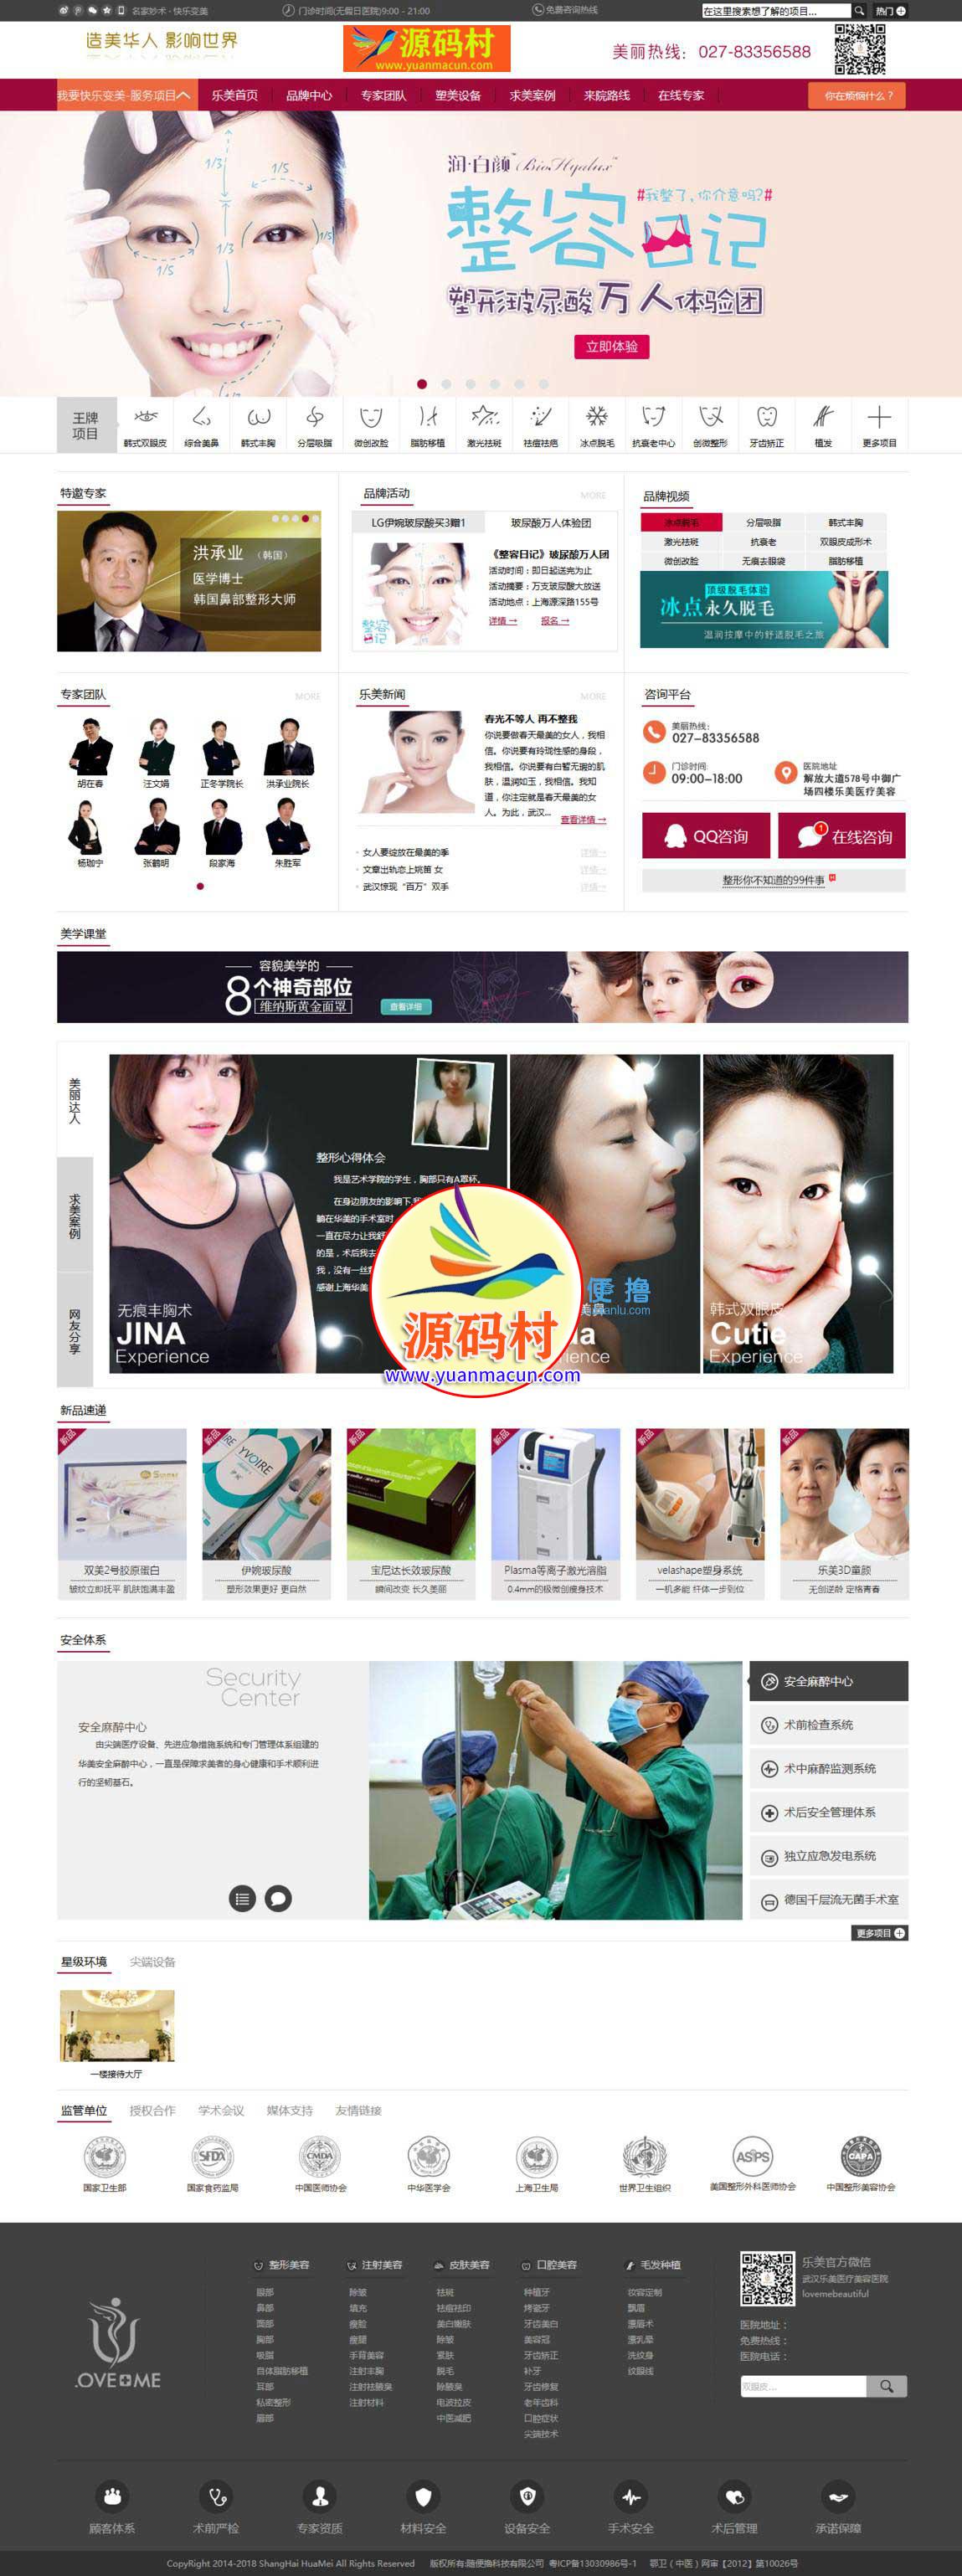 dedecms5.7企业网站精品整形美容医院类通用织梦模板